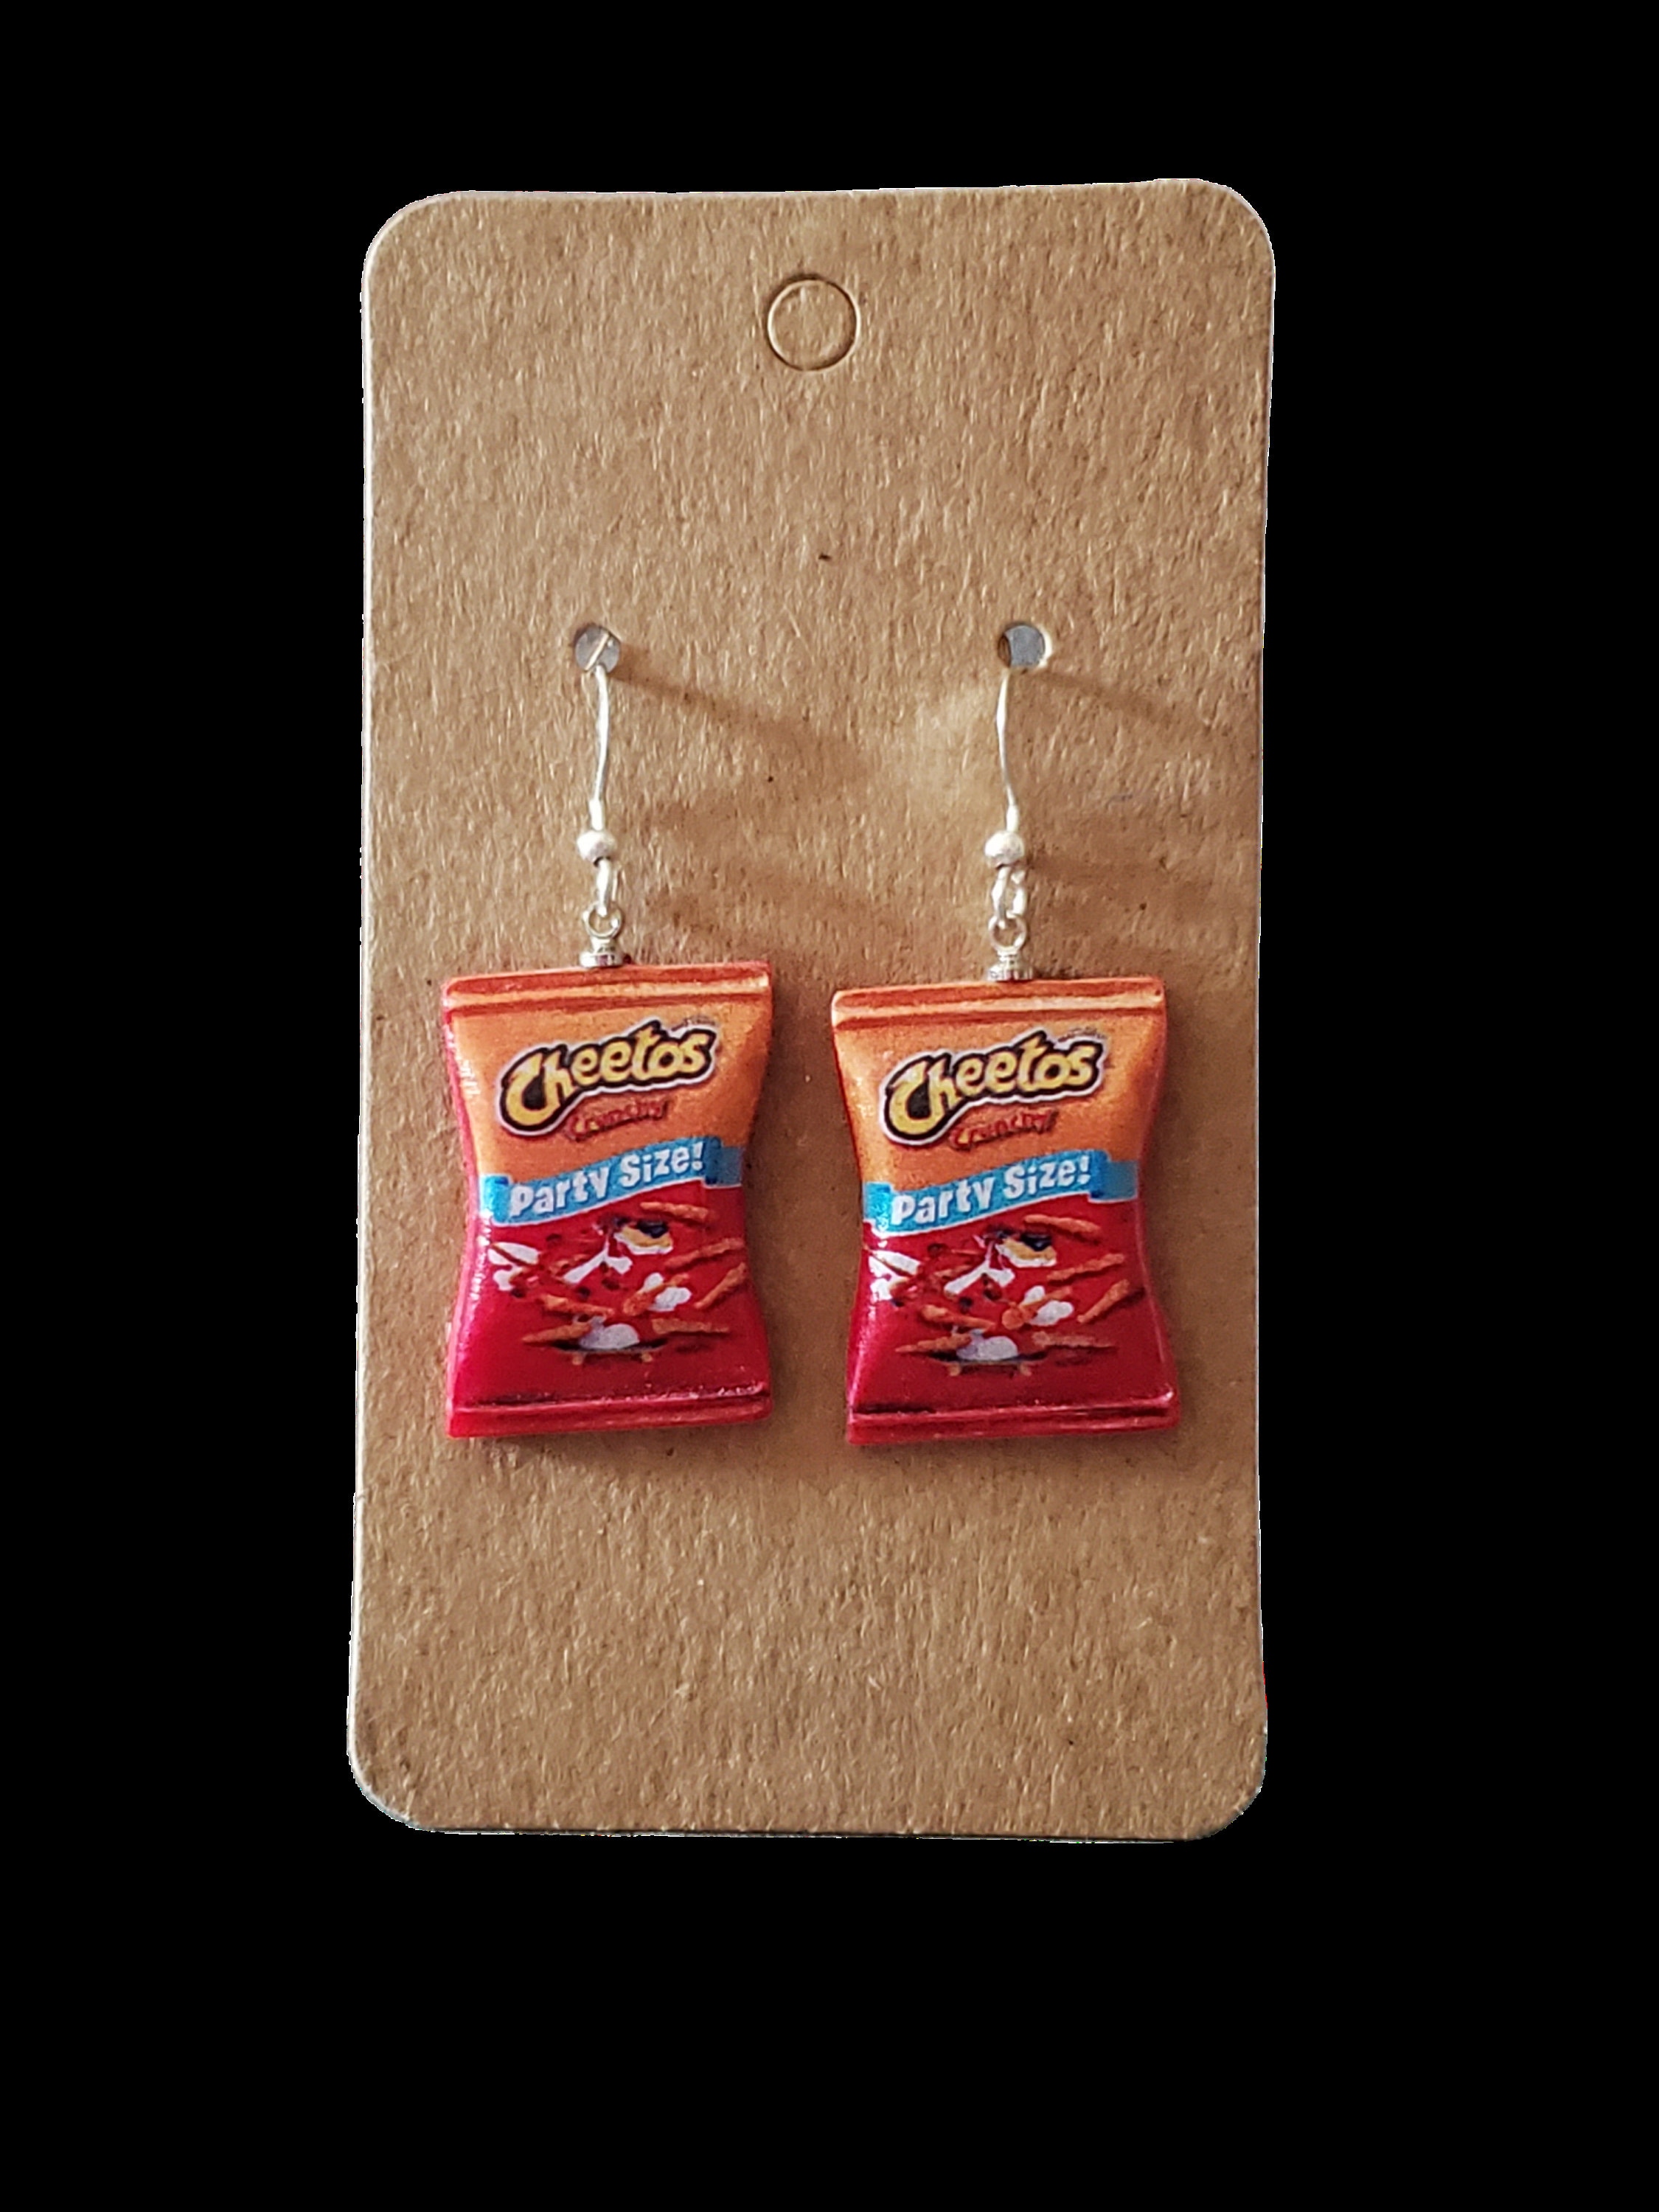 Mini Bag of Cheetos Earrings